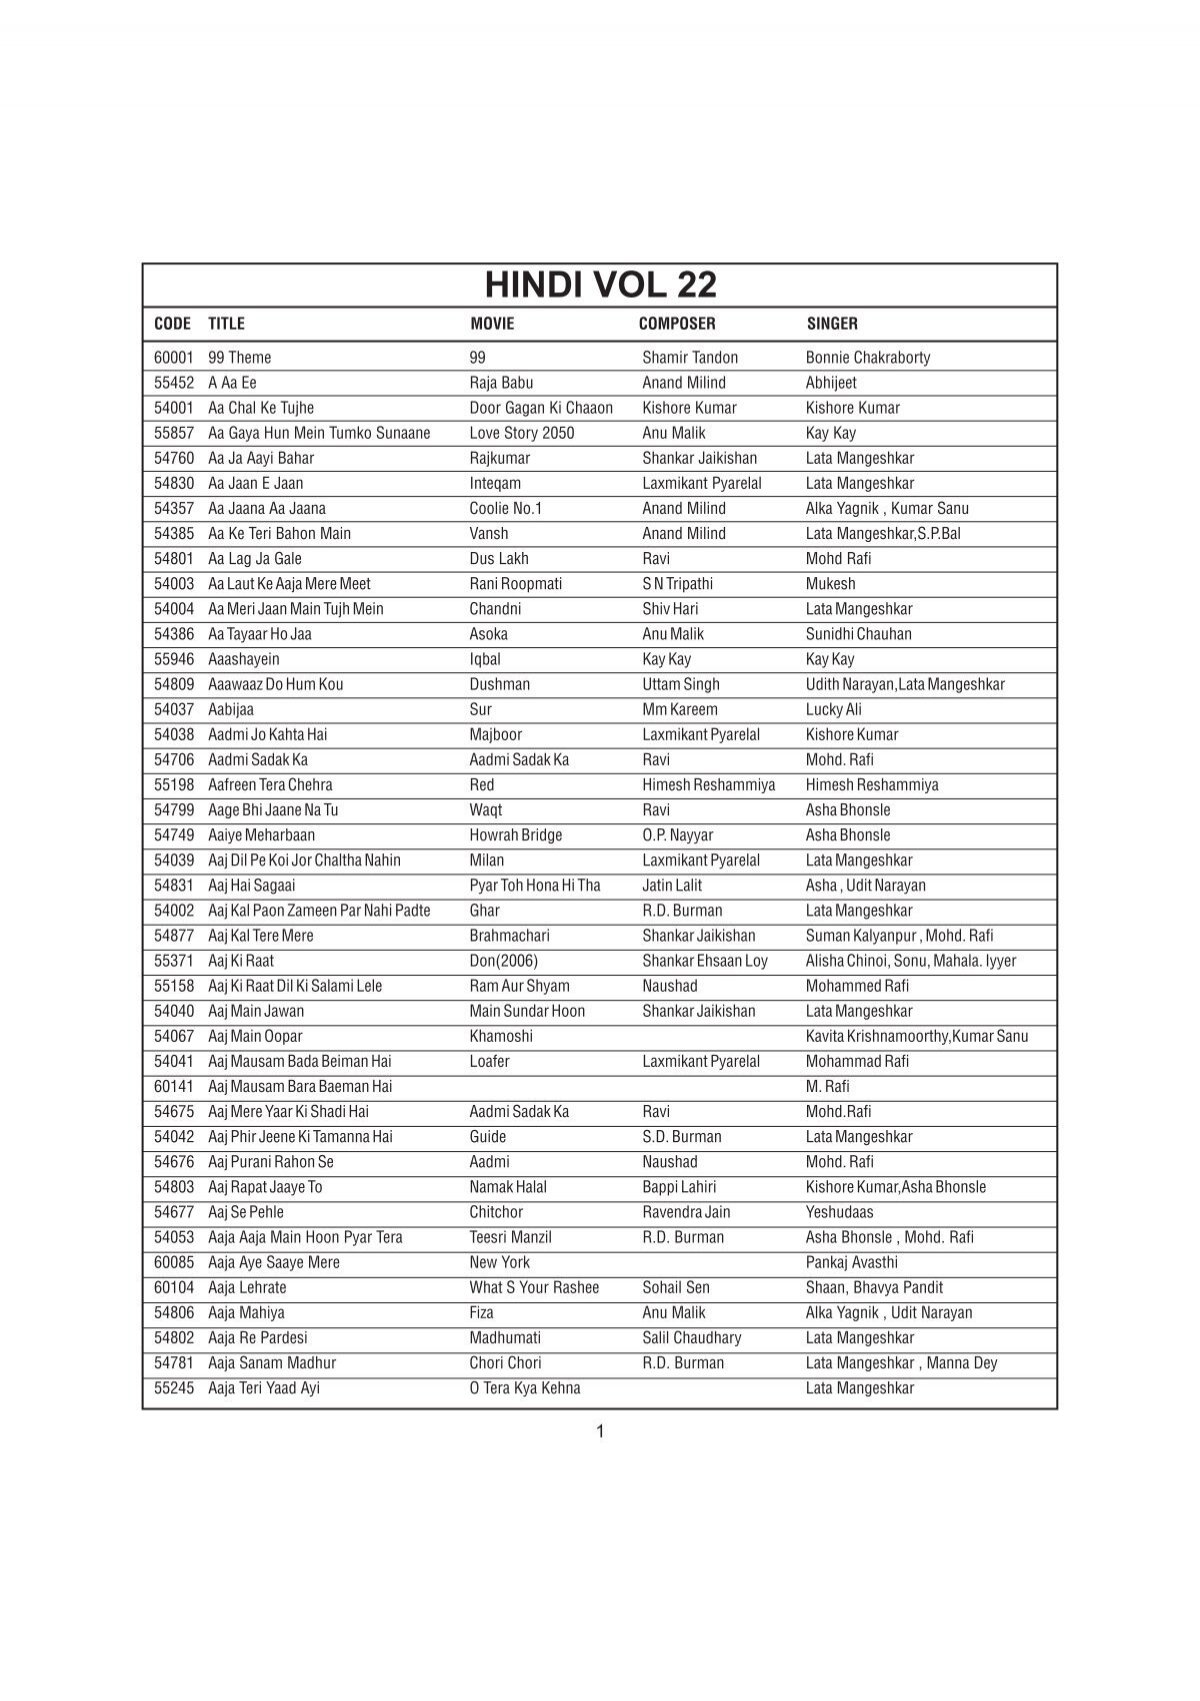 Hindi vol 22 - What is Karaoke